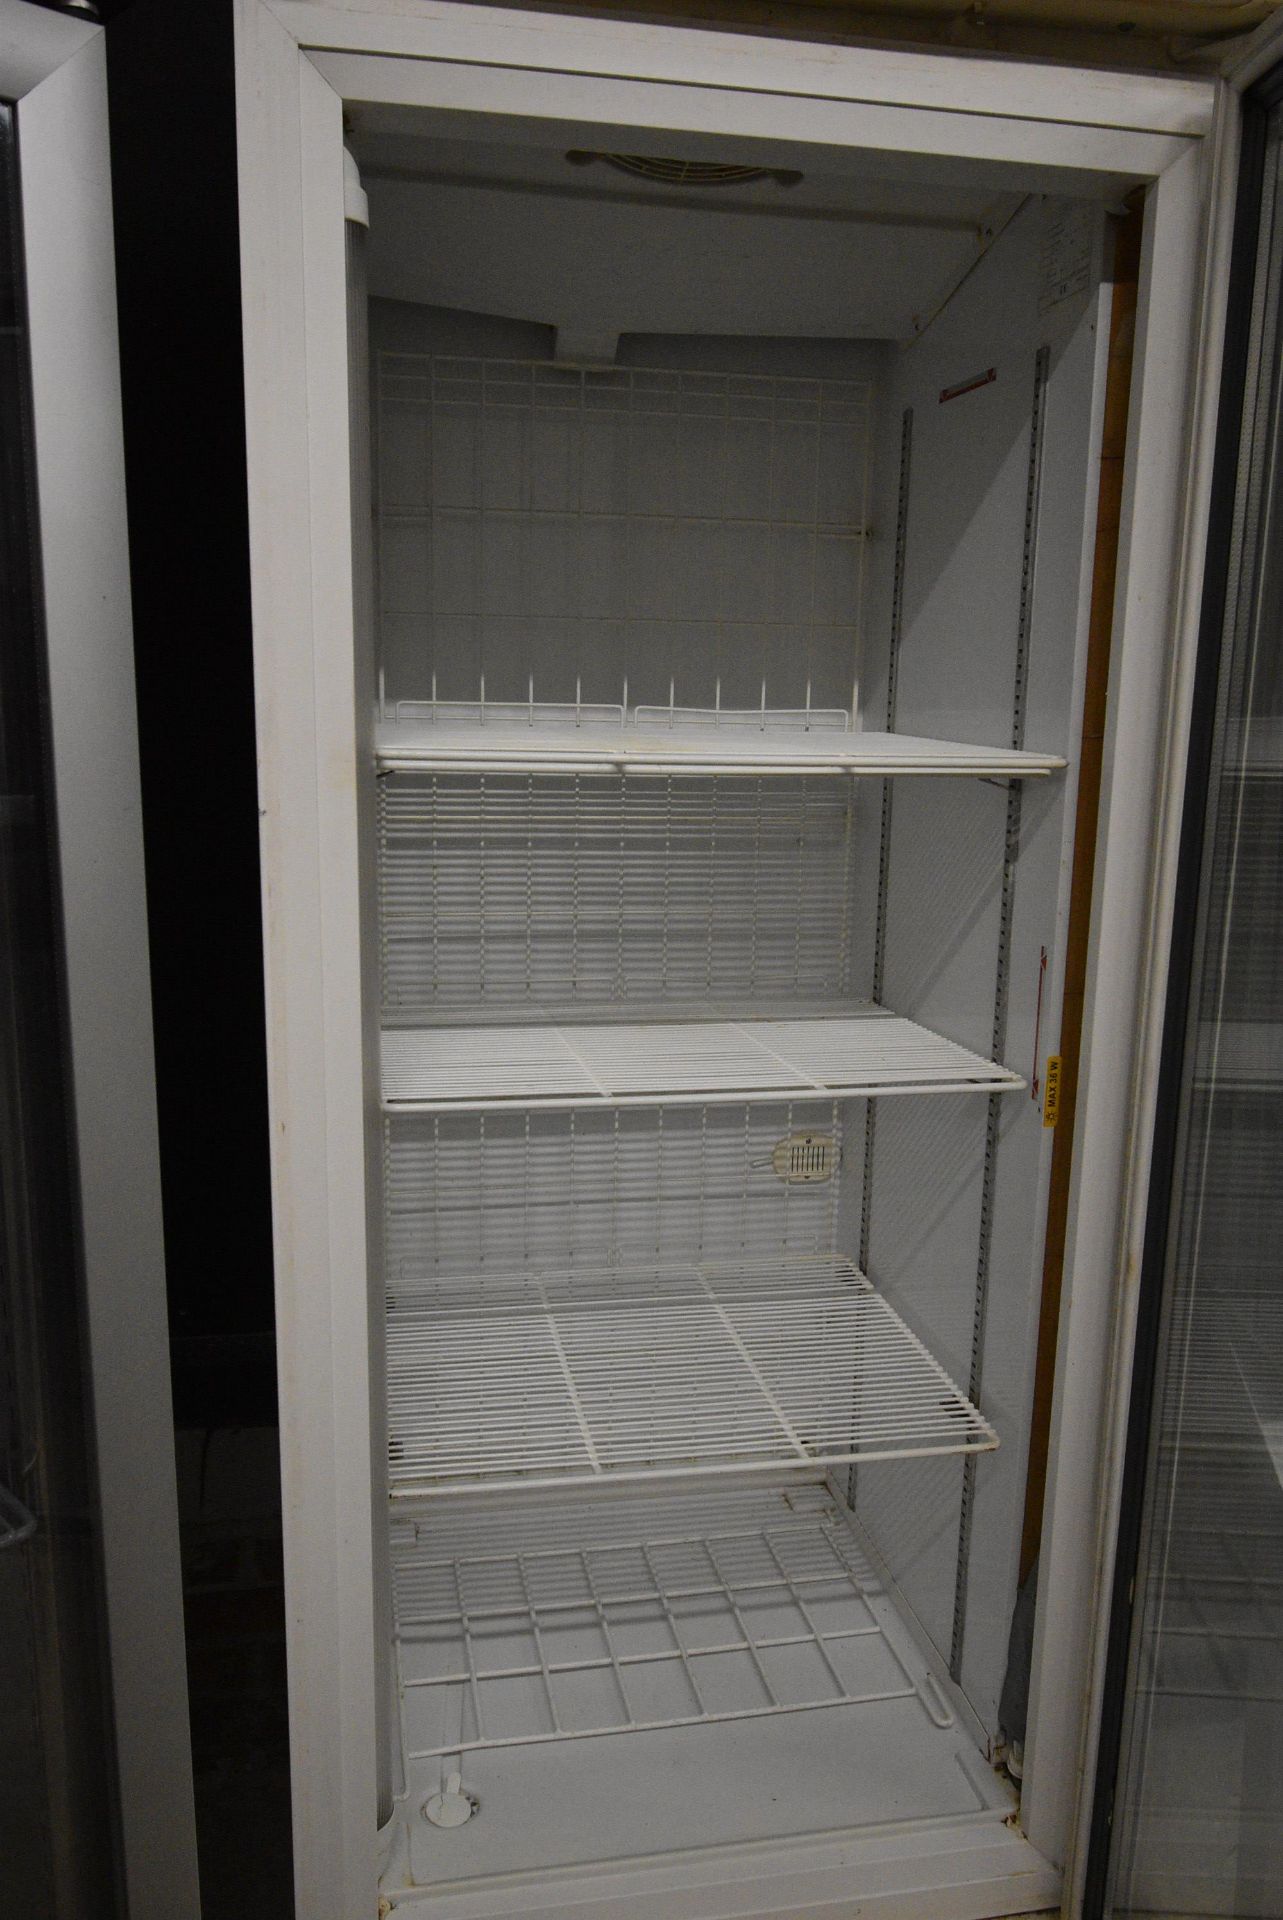 Upright Refrigerator - Image 2 of 2